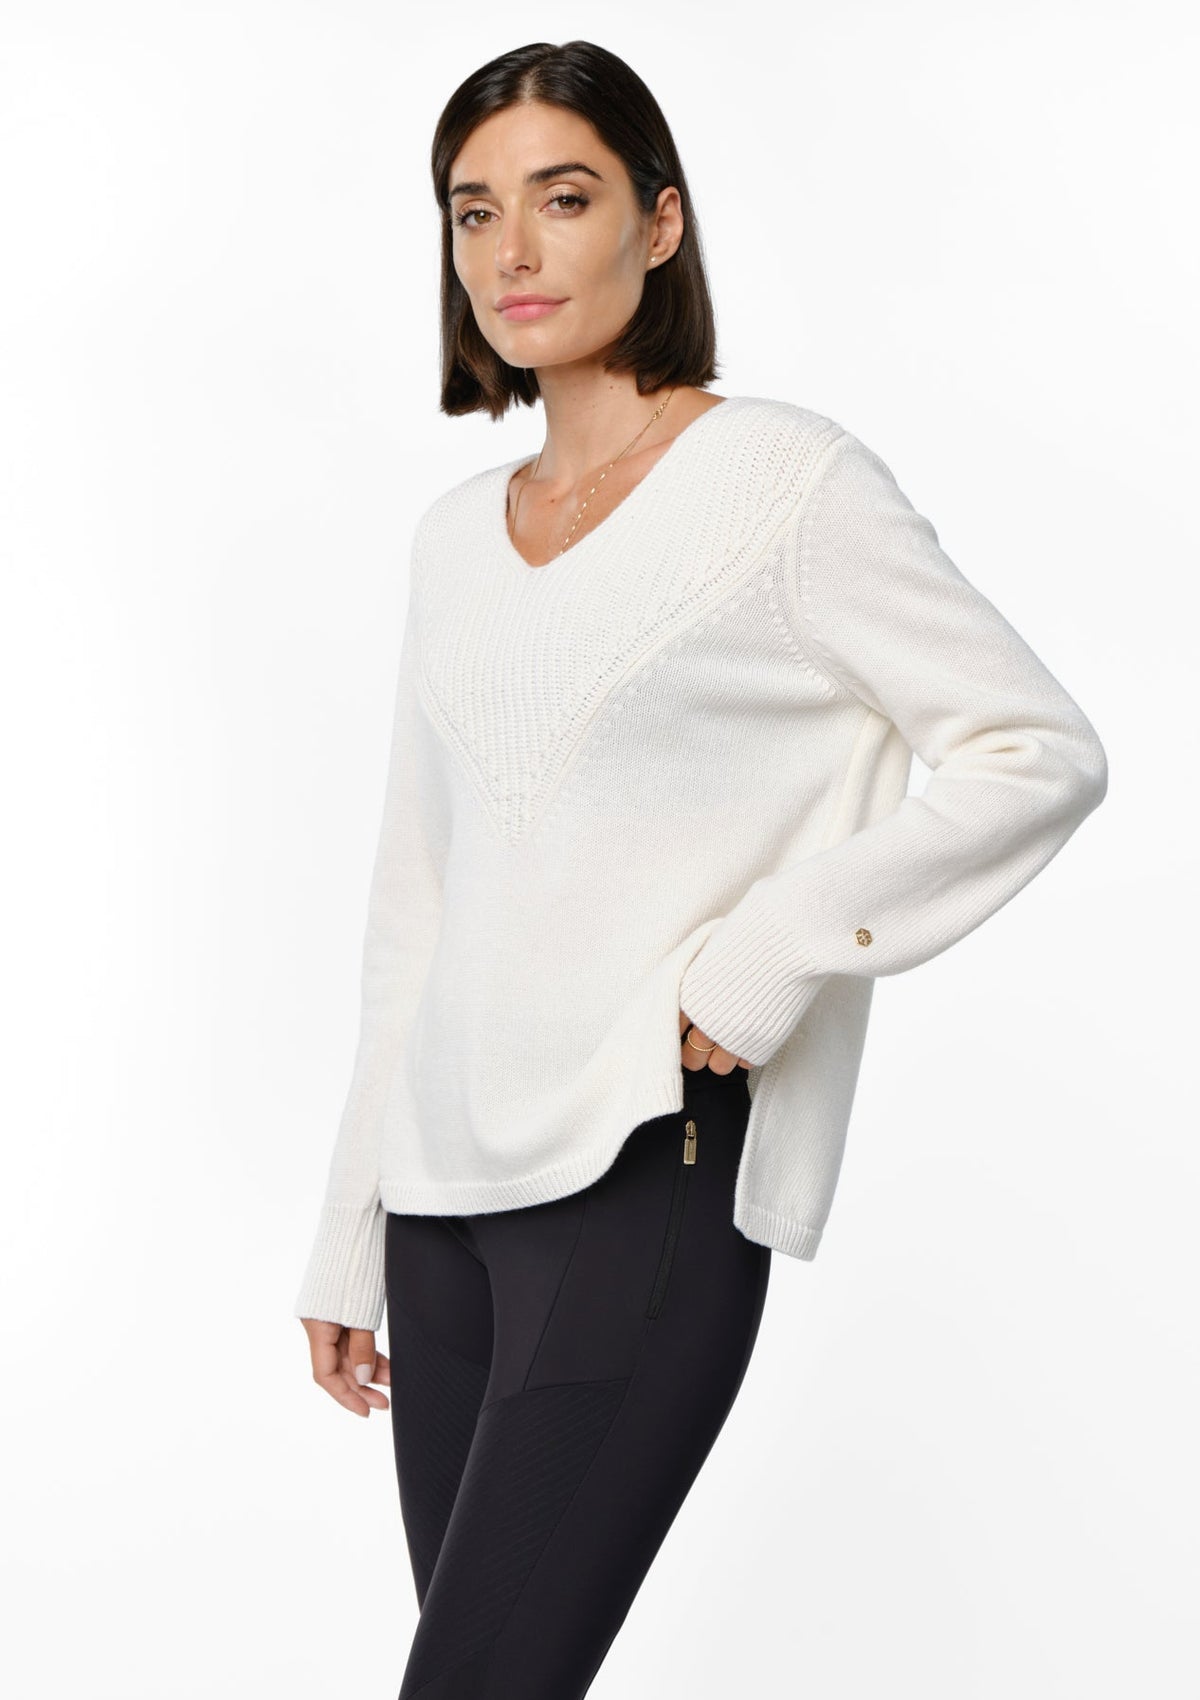 NEROLA Merino Cashmere Sweater cajo